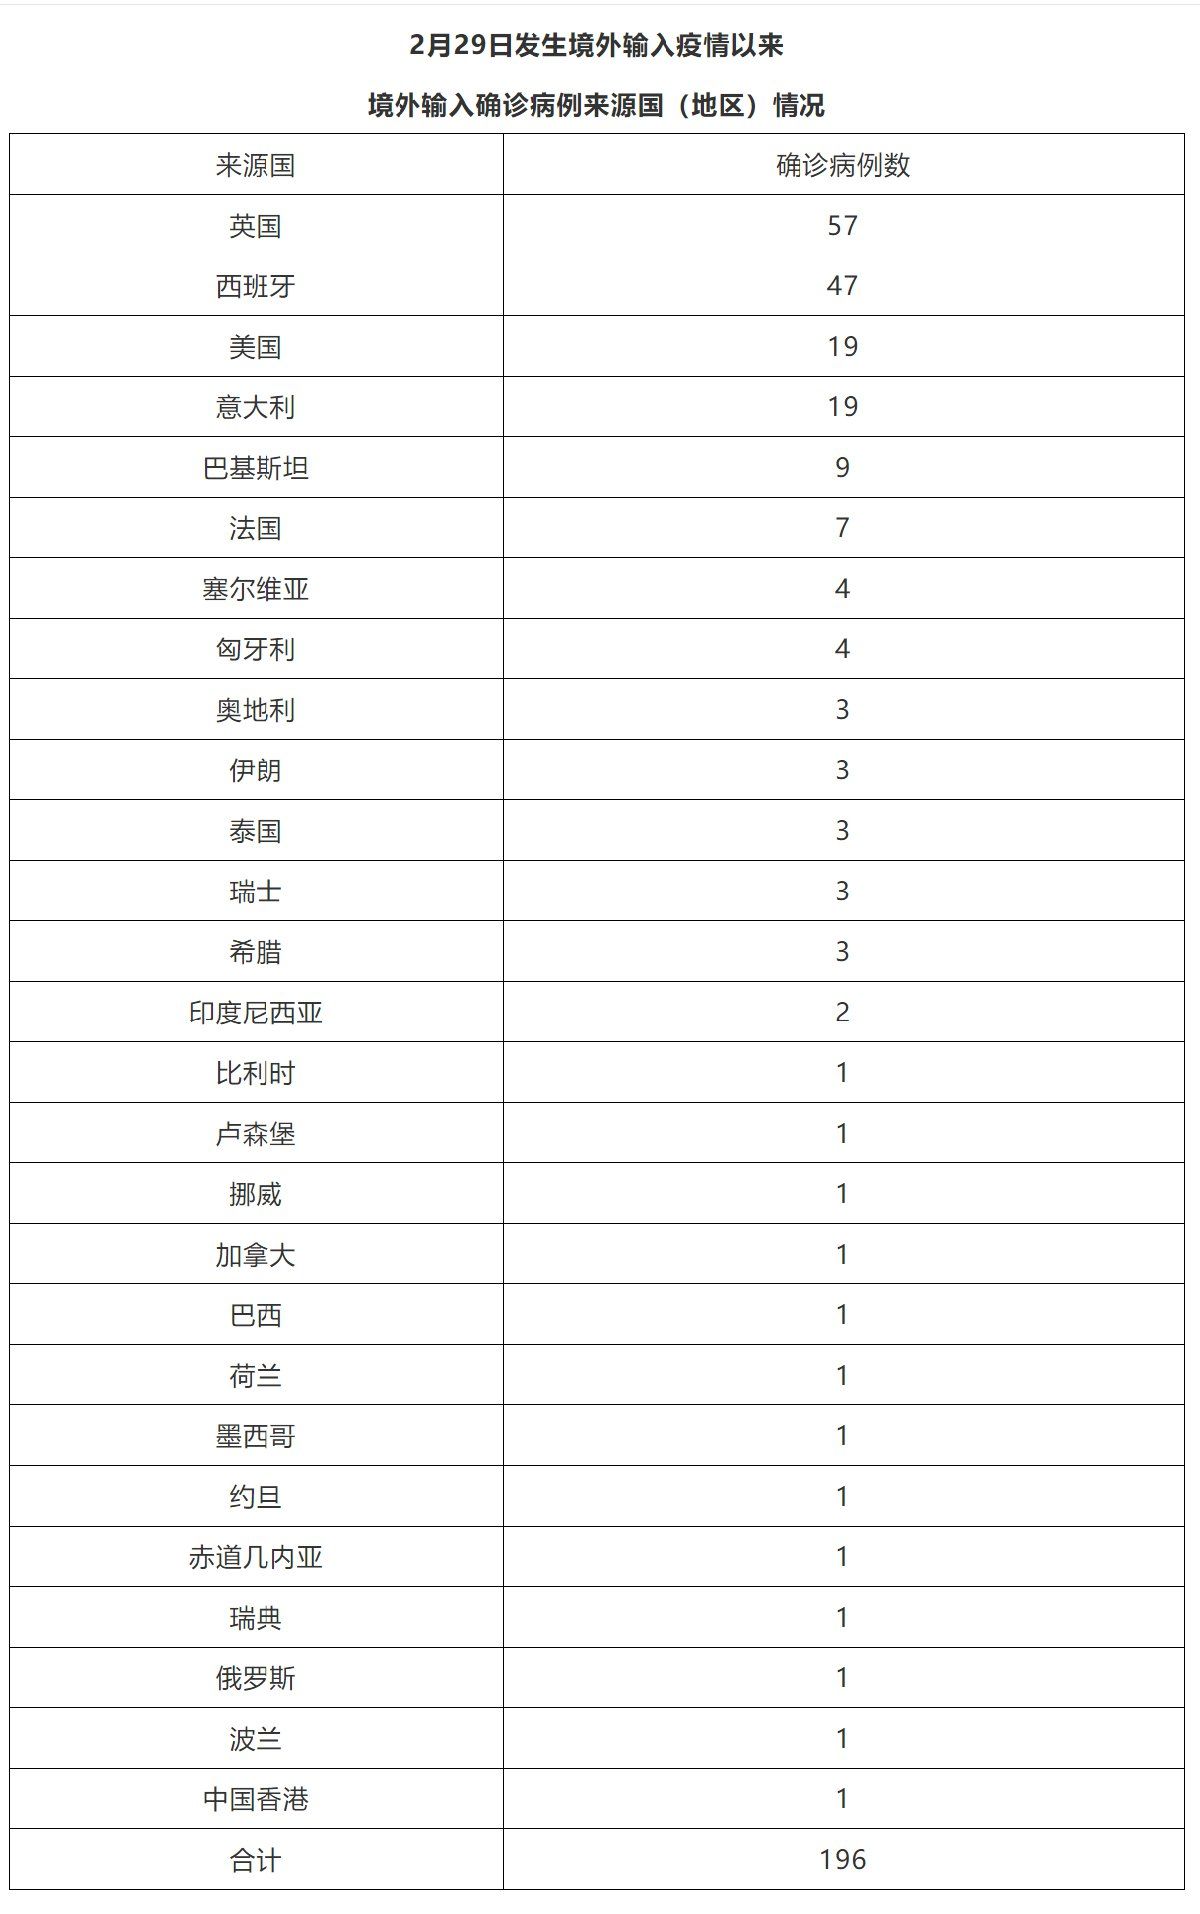 12月13日北京新增1例境外输入确诊病例活动轨迹